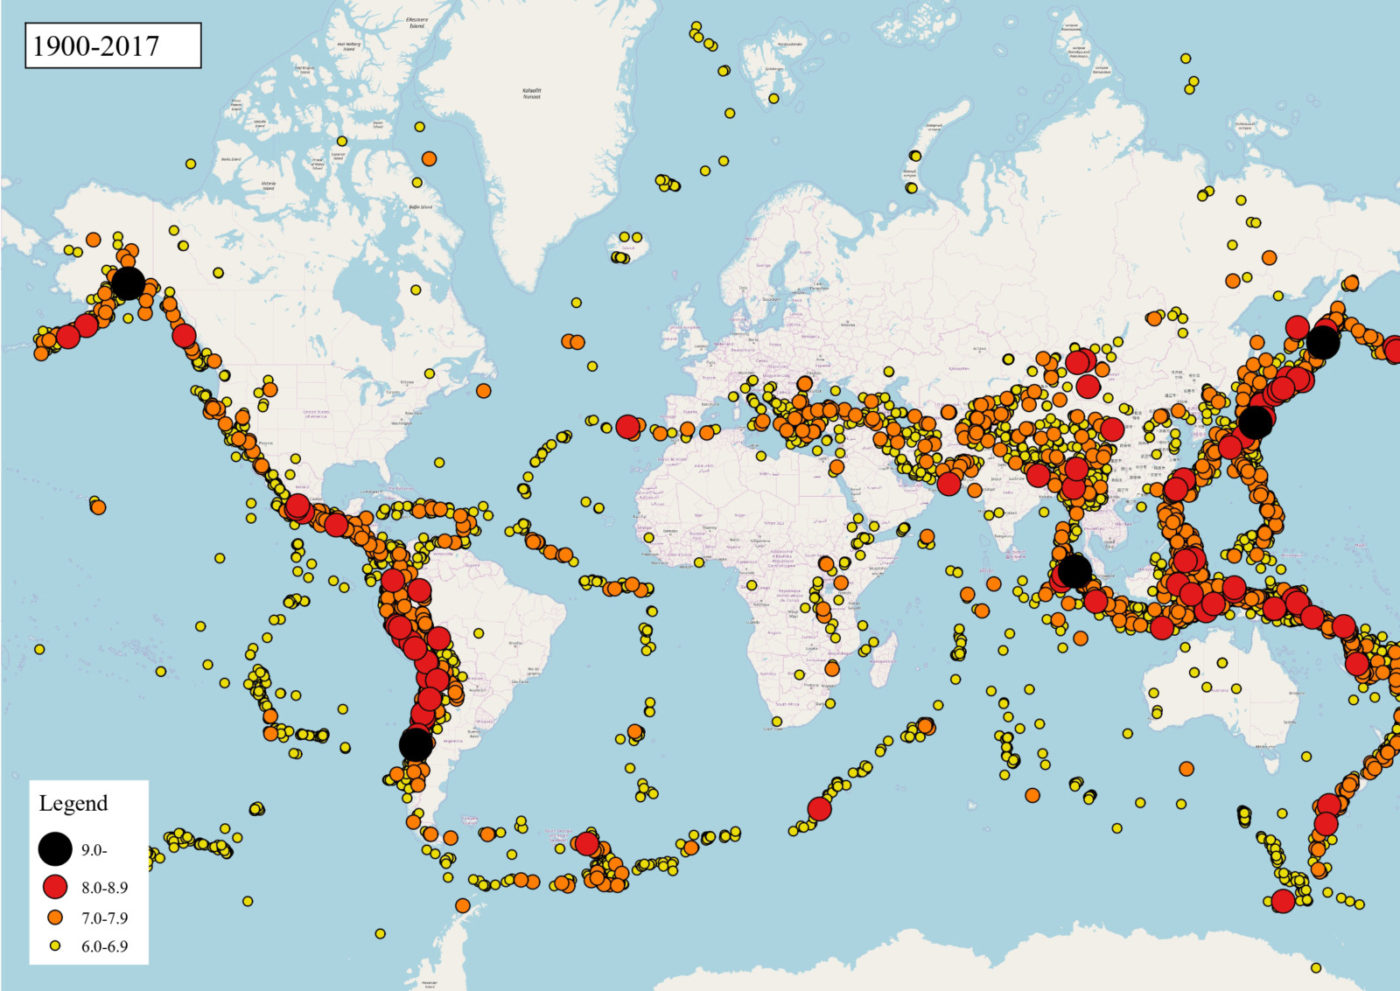 Землетрясения: какие регионы мира наиболее подвержены риску? |  New-Science.ru